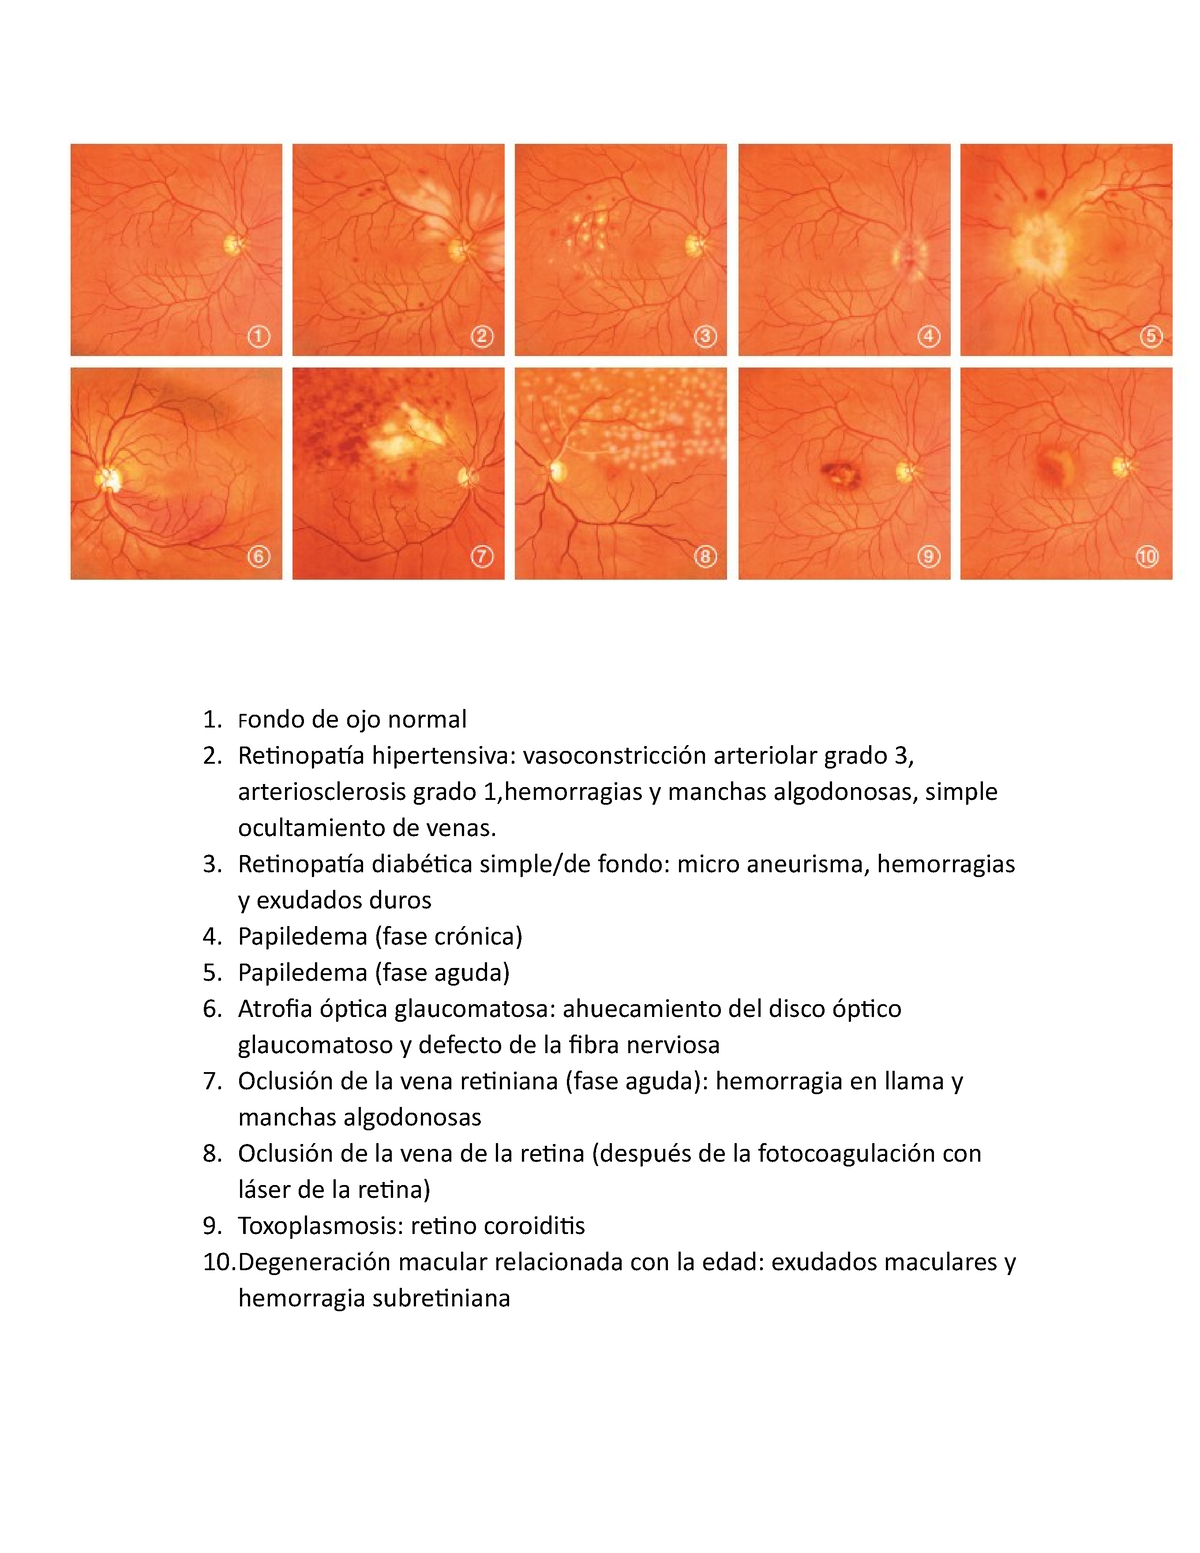 retinopatía hipertensiva vs normal